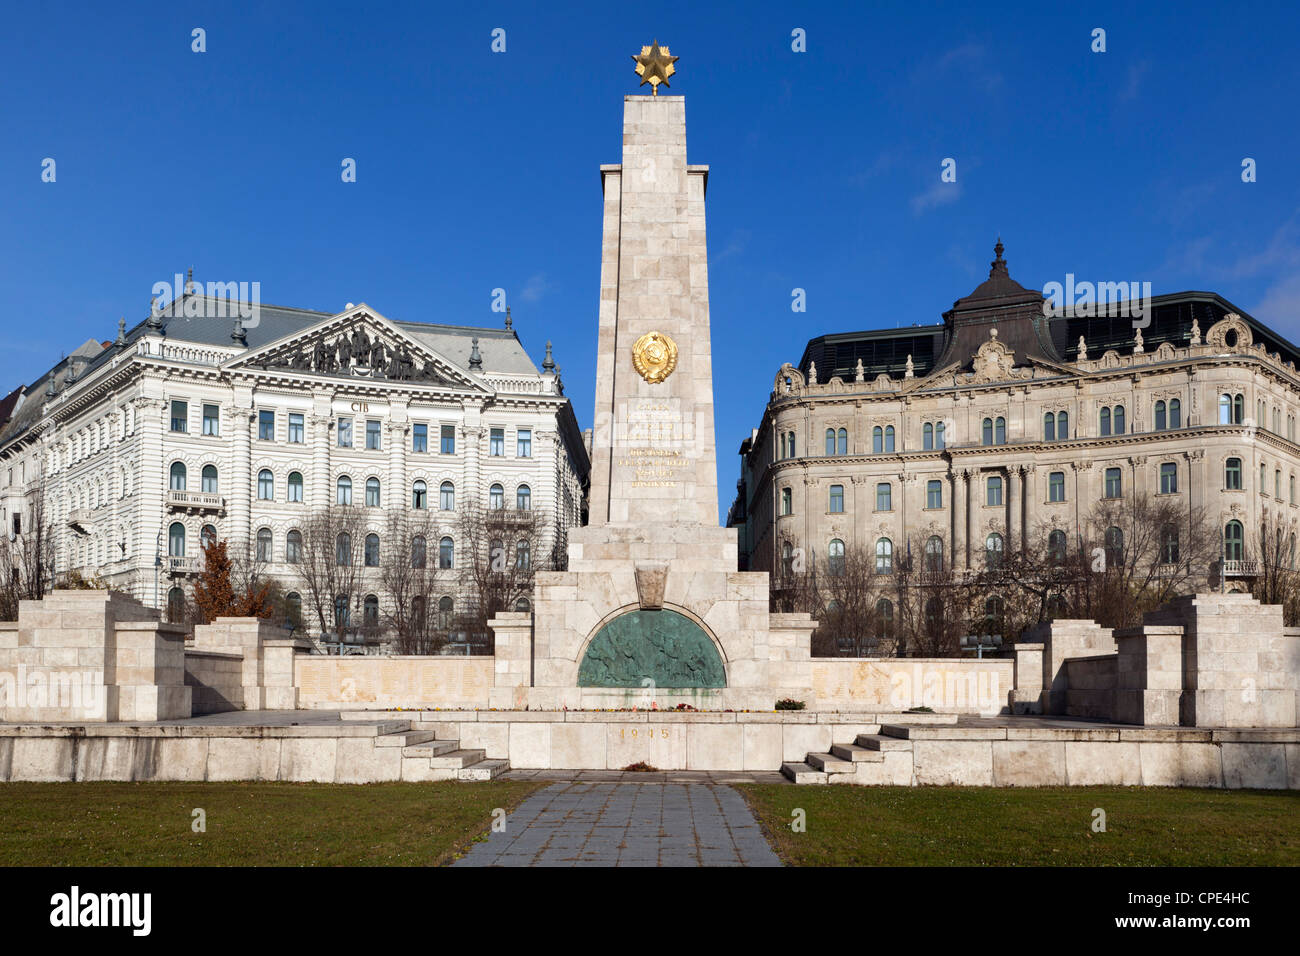 Sowjetische Obelisk zum Gedenken an die Befreiung der Stadt durch die Rote Armee im Jahre 1945, Liberty Square, Budapest, Ungarn, Europa Stockfoto